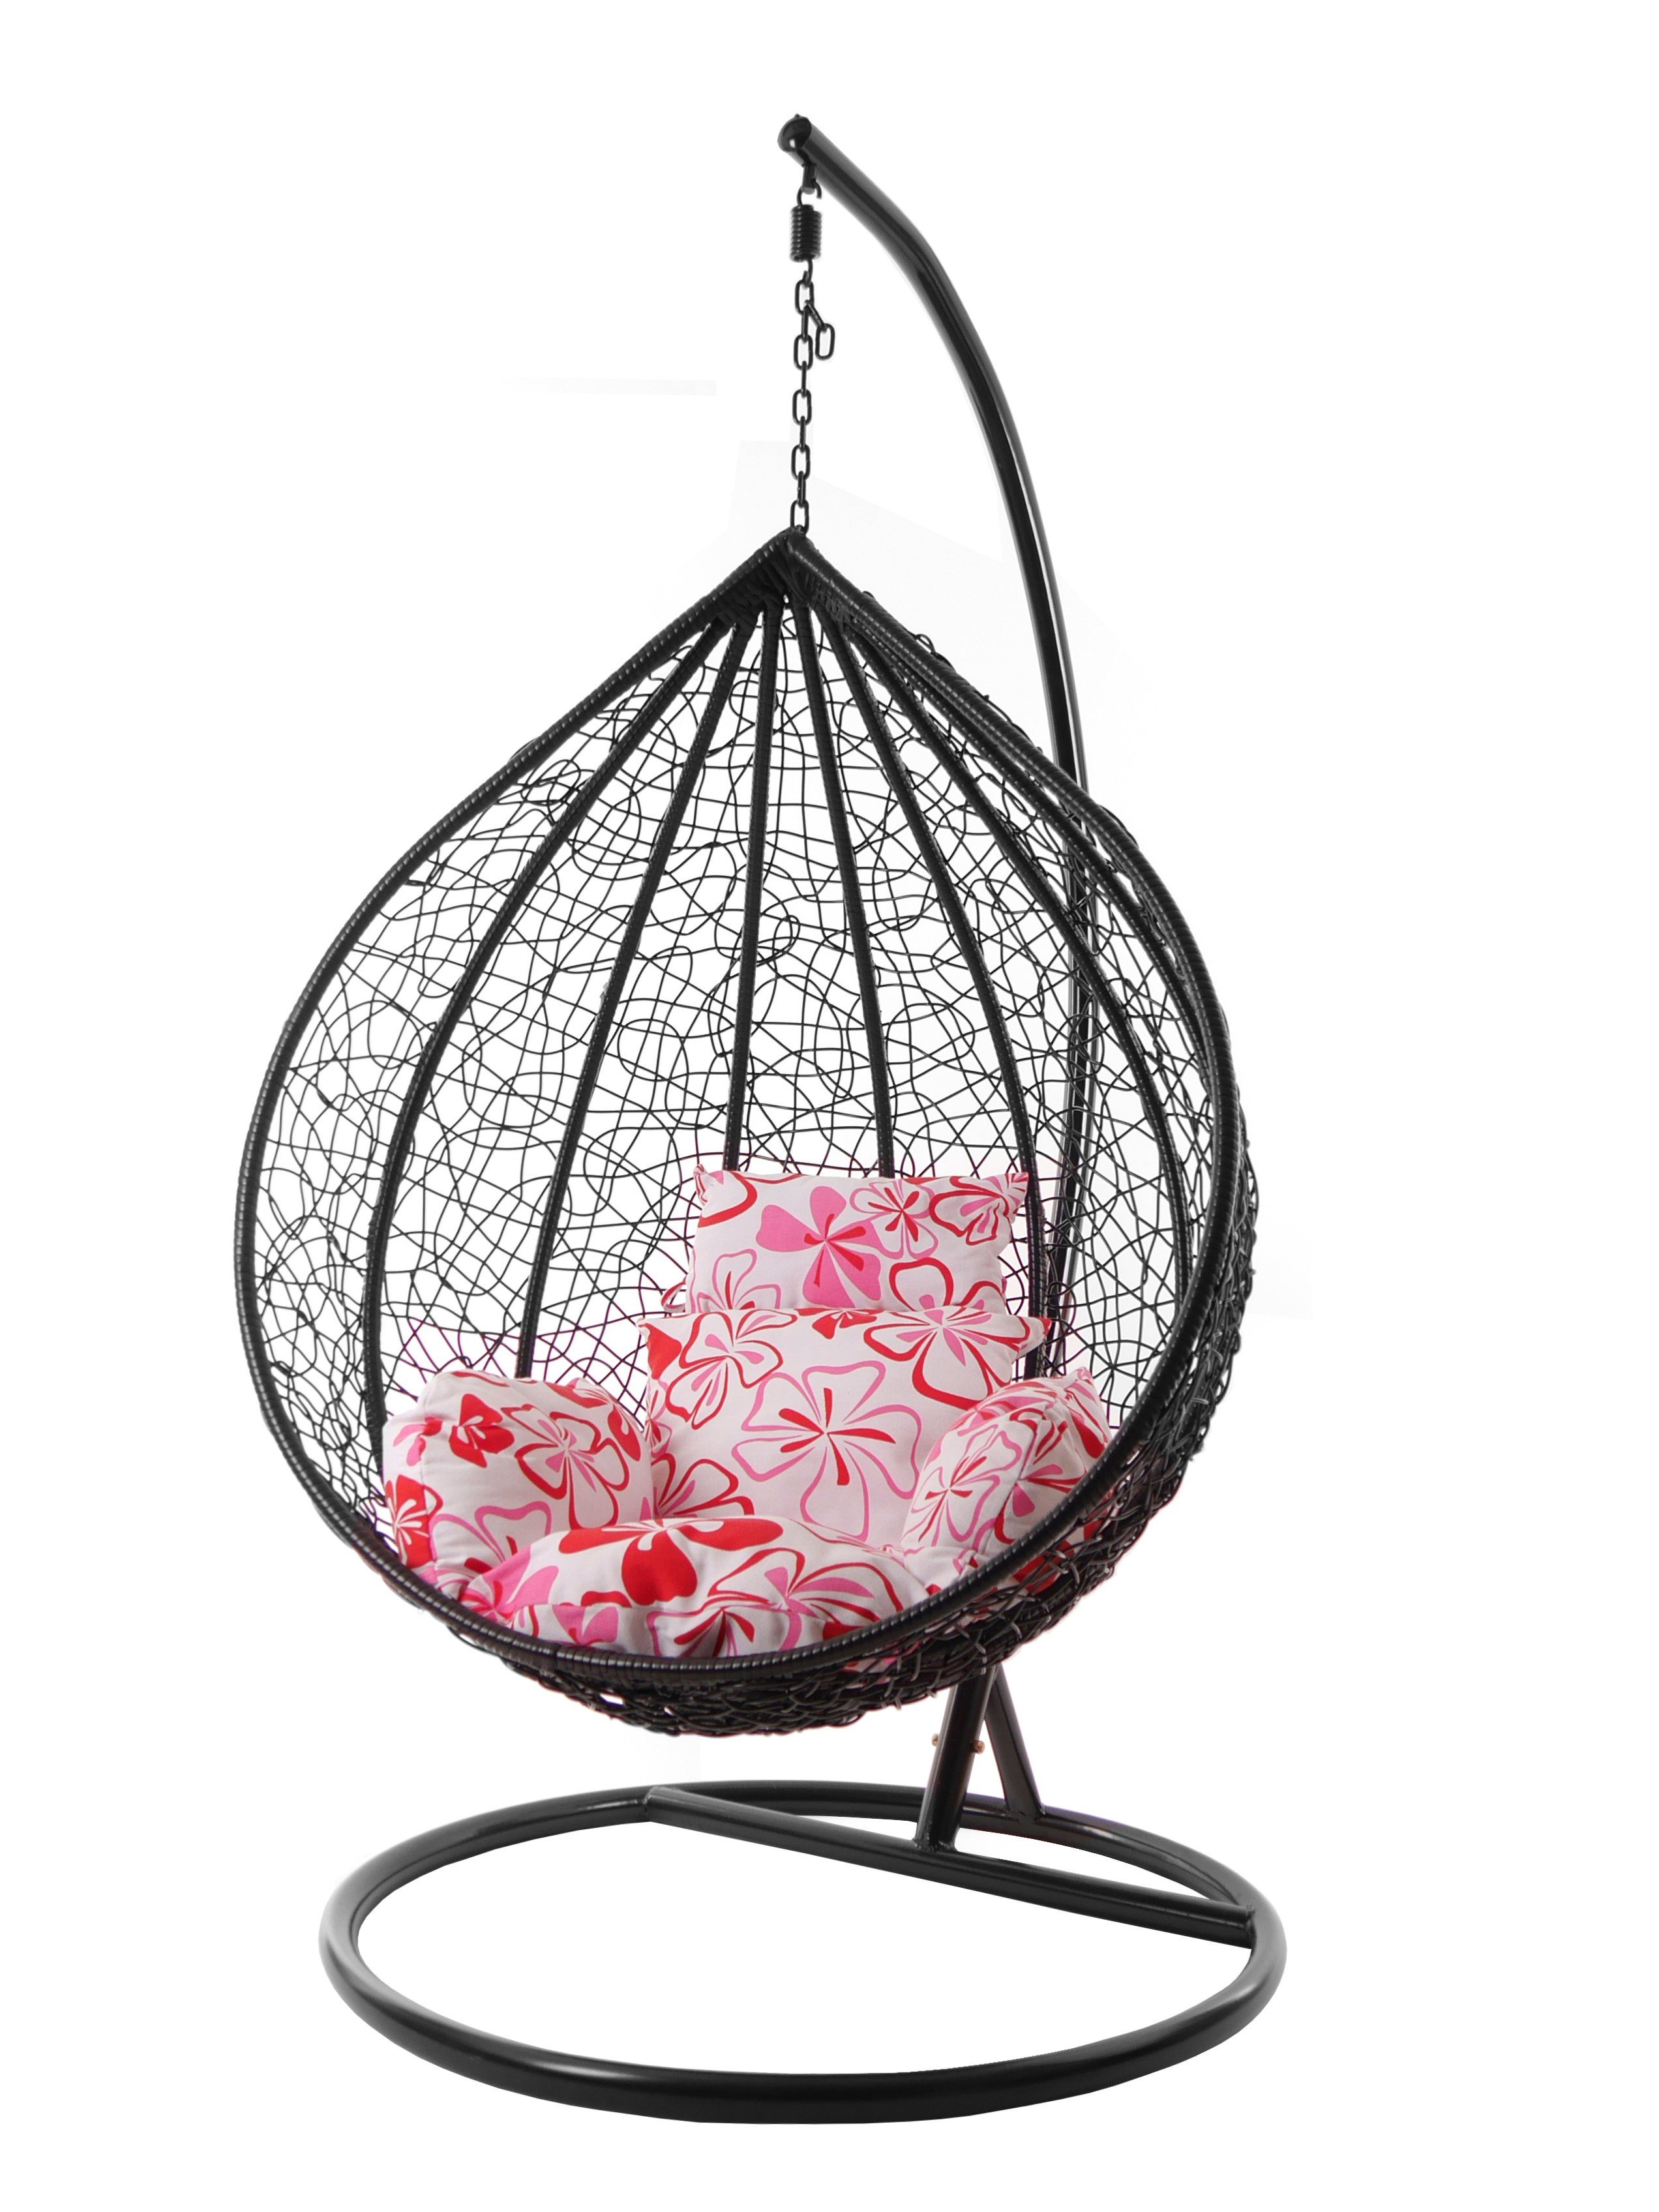 KIDEO Hängesessel Swing love) MANACOR flower Gestell XXL Chair, blumenmuster mit Hängesessel und Kissen, Nest-Kissen schwarz, (1333 Hängesessel sweet